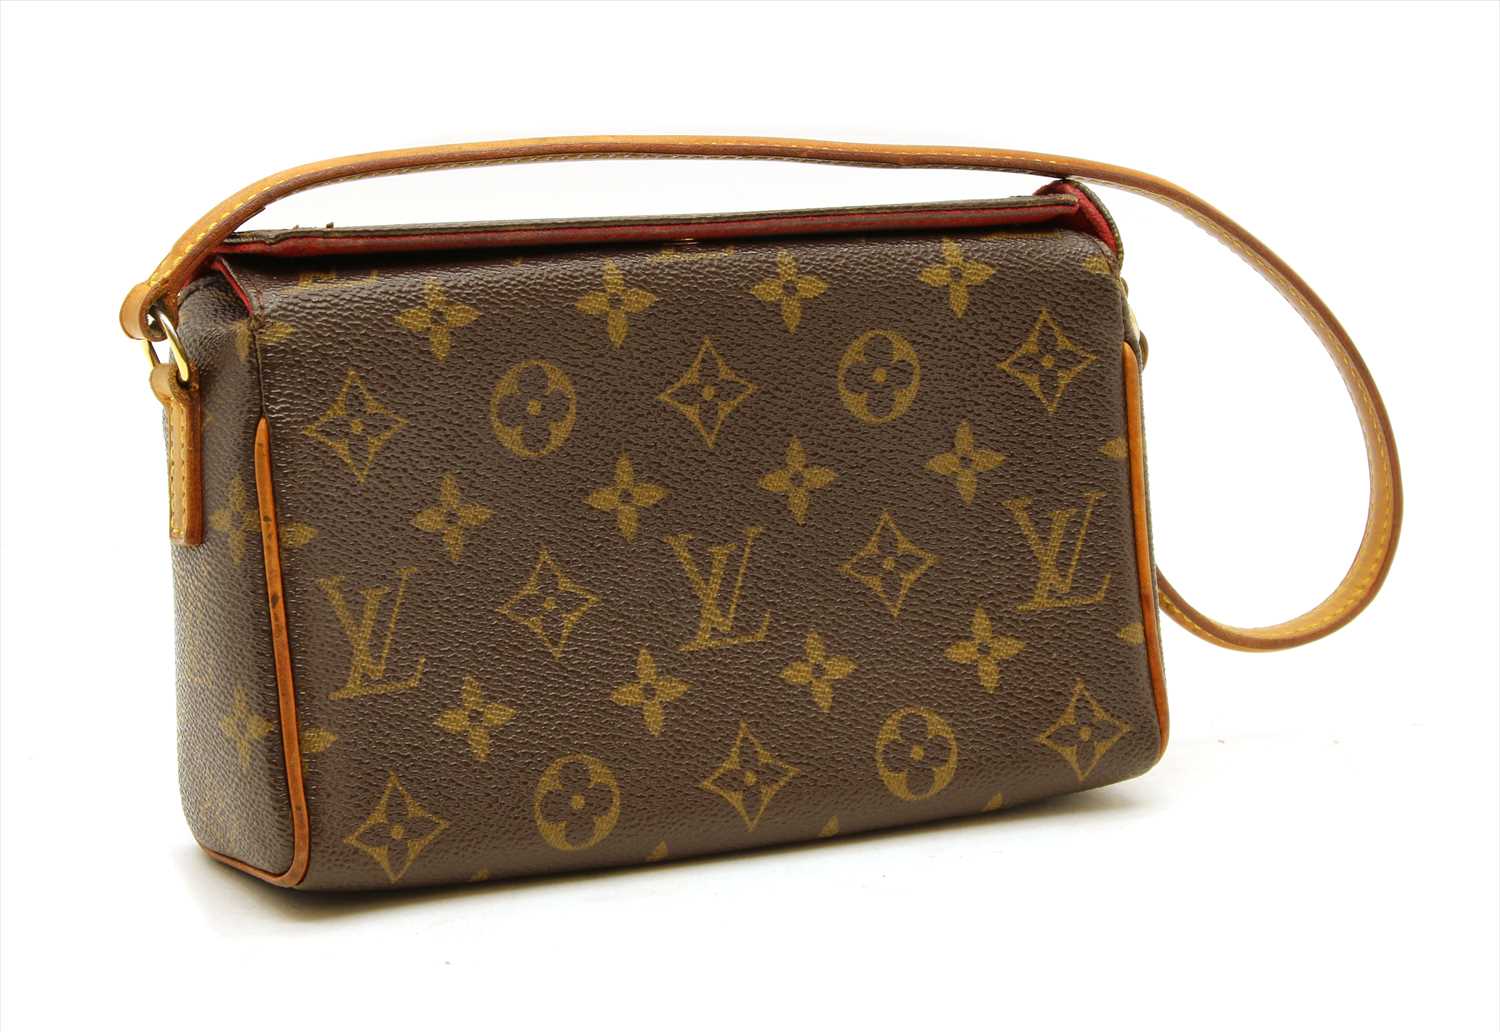 Lot - A Louis Vuitton monogram canvas small shoulder bag